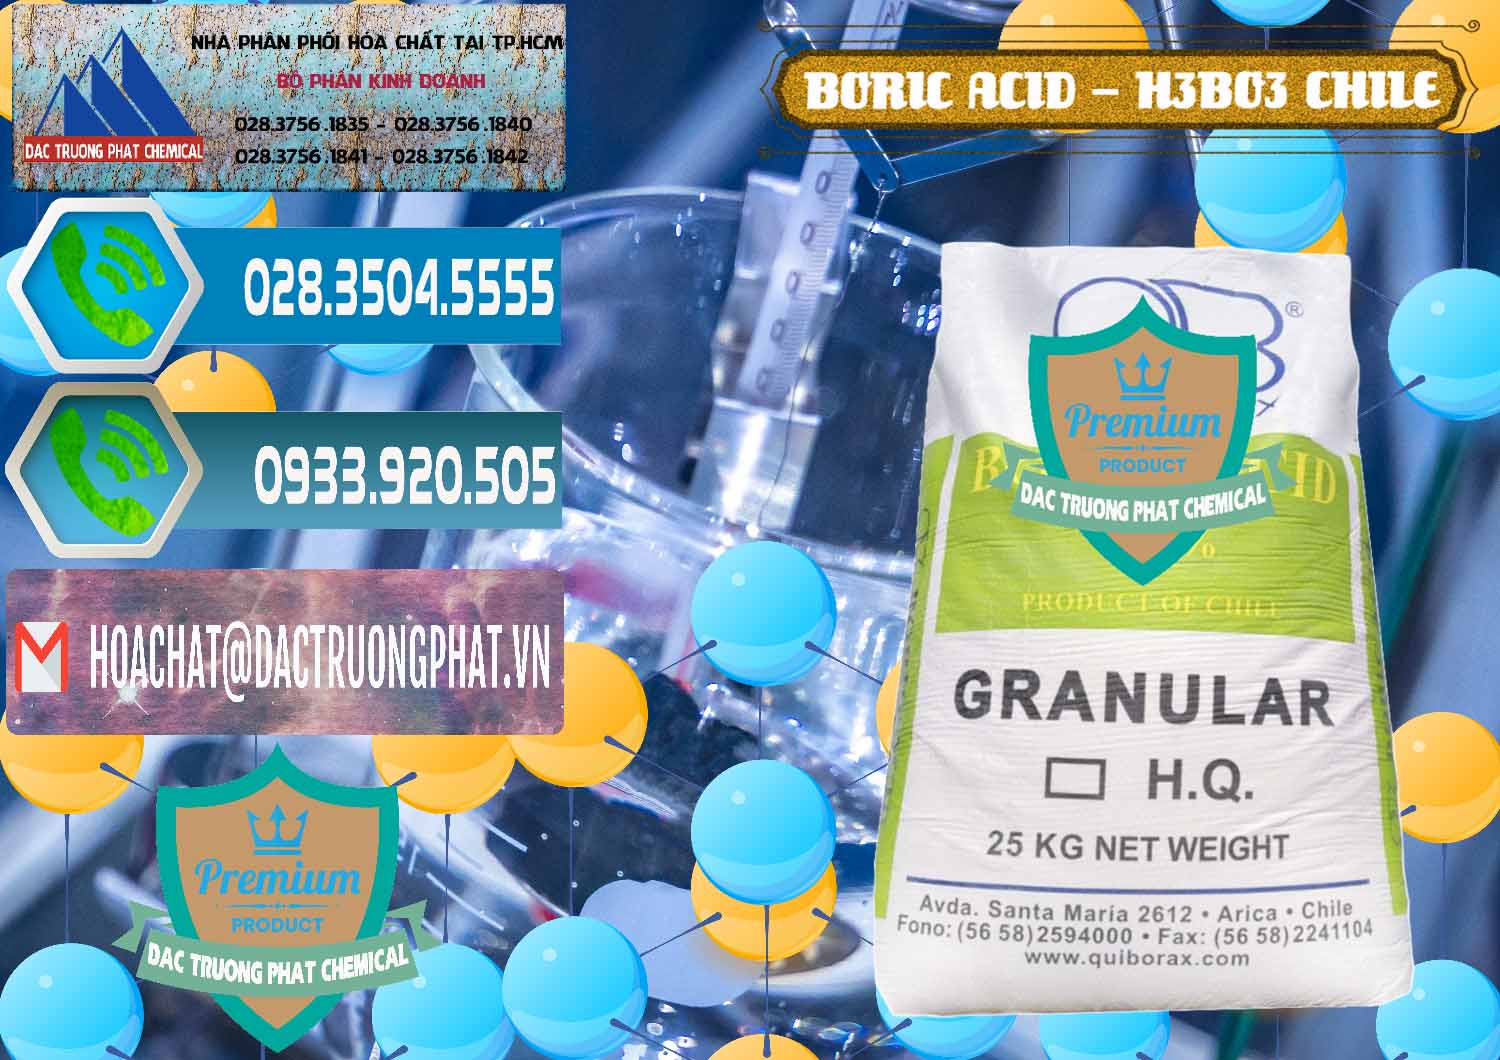 Đơn vị chuyên bán _ cung cấp Acid Boric – Axit Boric H3BO3 99% Quiborax Chile - 0281 - Cty cung cấp ( phân phối ) hóa chất tại TP.HCM - congtyhoachat.net